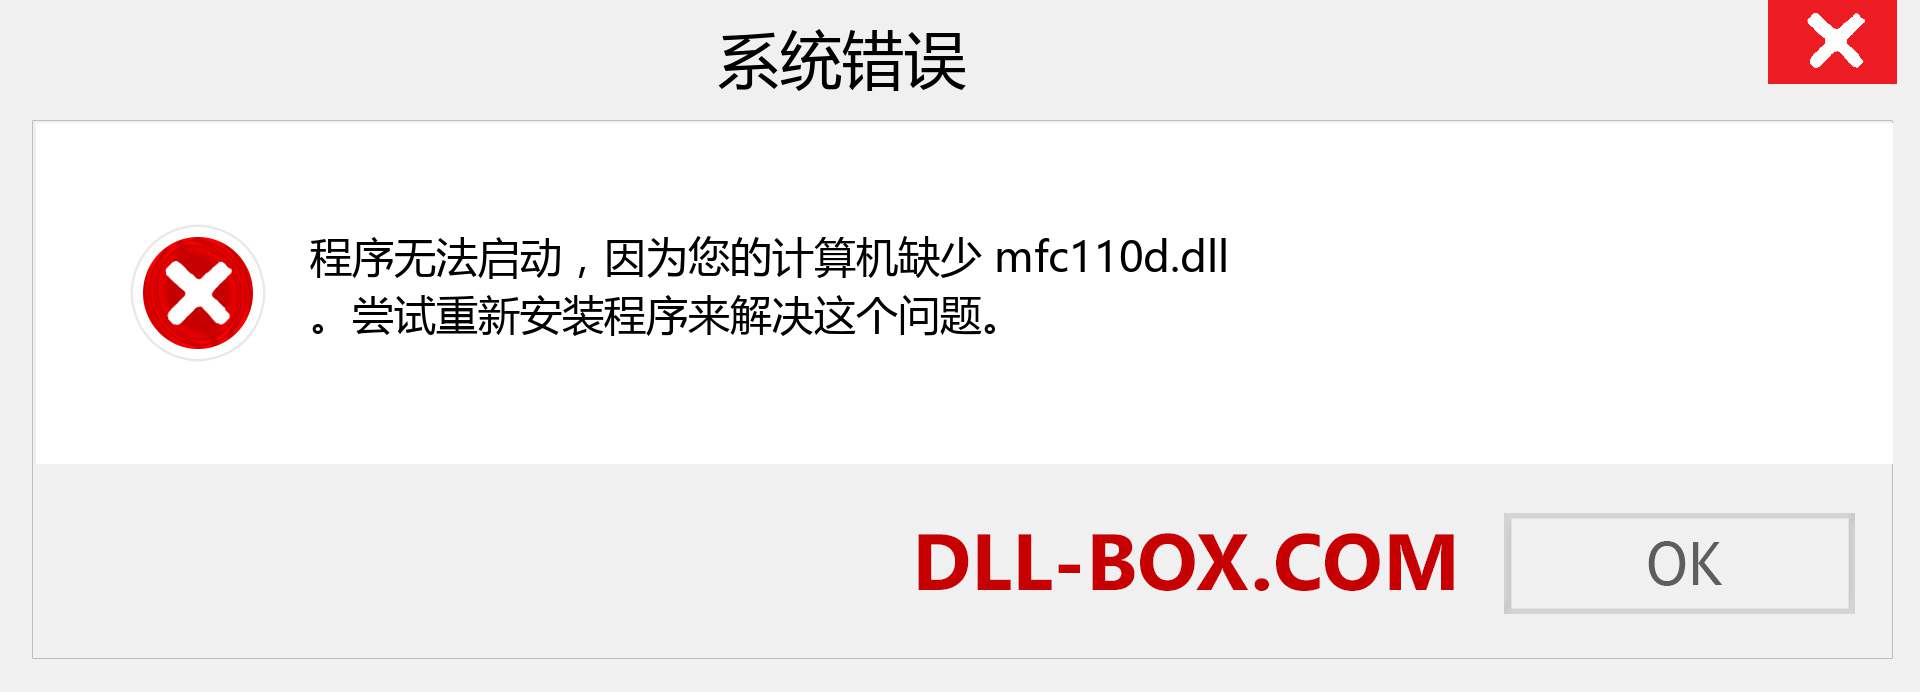 mfc110d.dll 文件丢失？。 适用于 Windows 7、8、10 的下载 - 修复 Windows、照片、图像上的 mfc110d dll 丢失错误